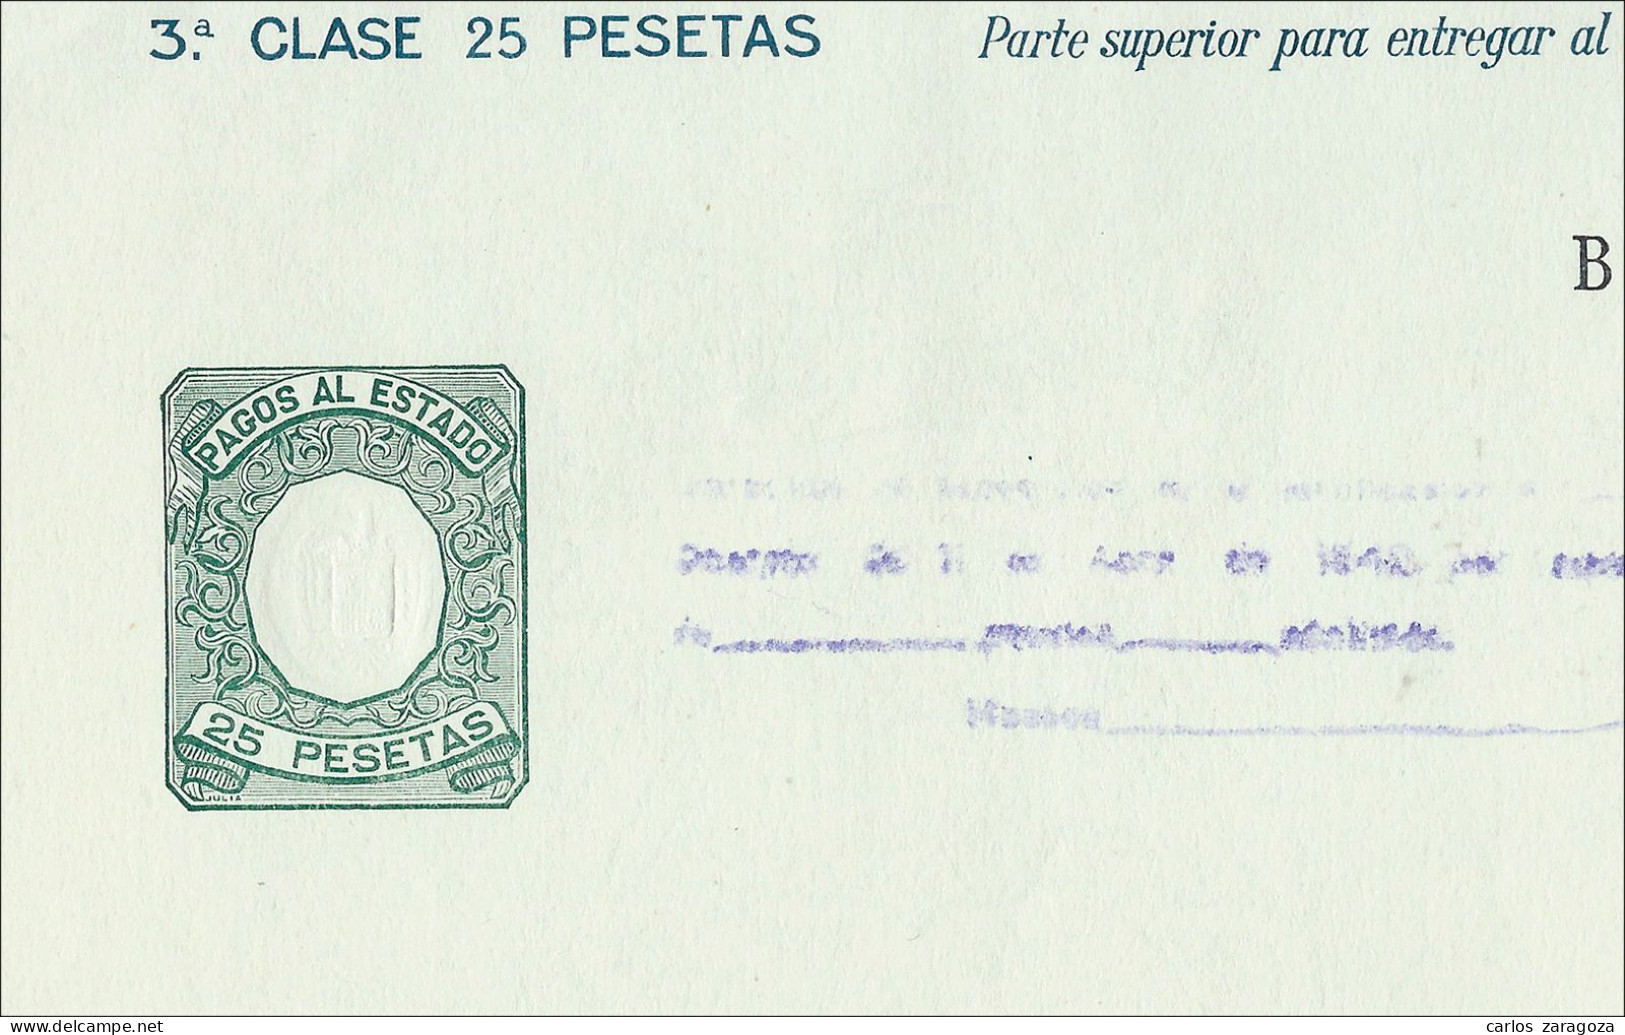 ESPAÑA 1942—PAGOS AL ESTADO 25 Ptas—Marca De Agua: AGUILA + TIMBRE DEL ESTADO - Fiscali